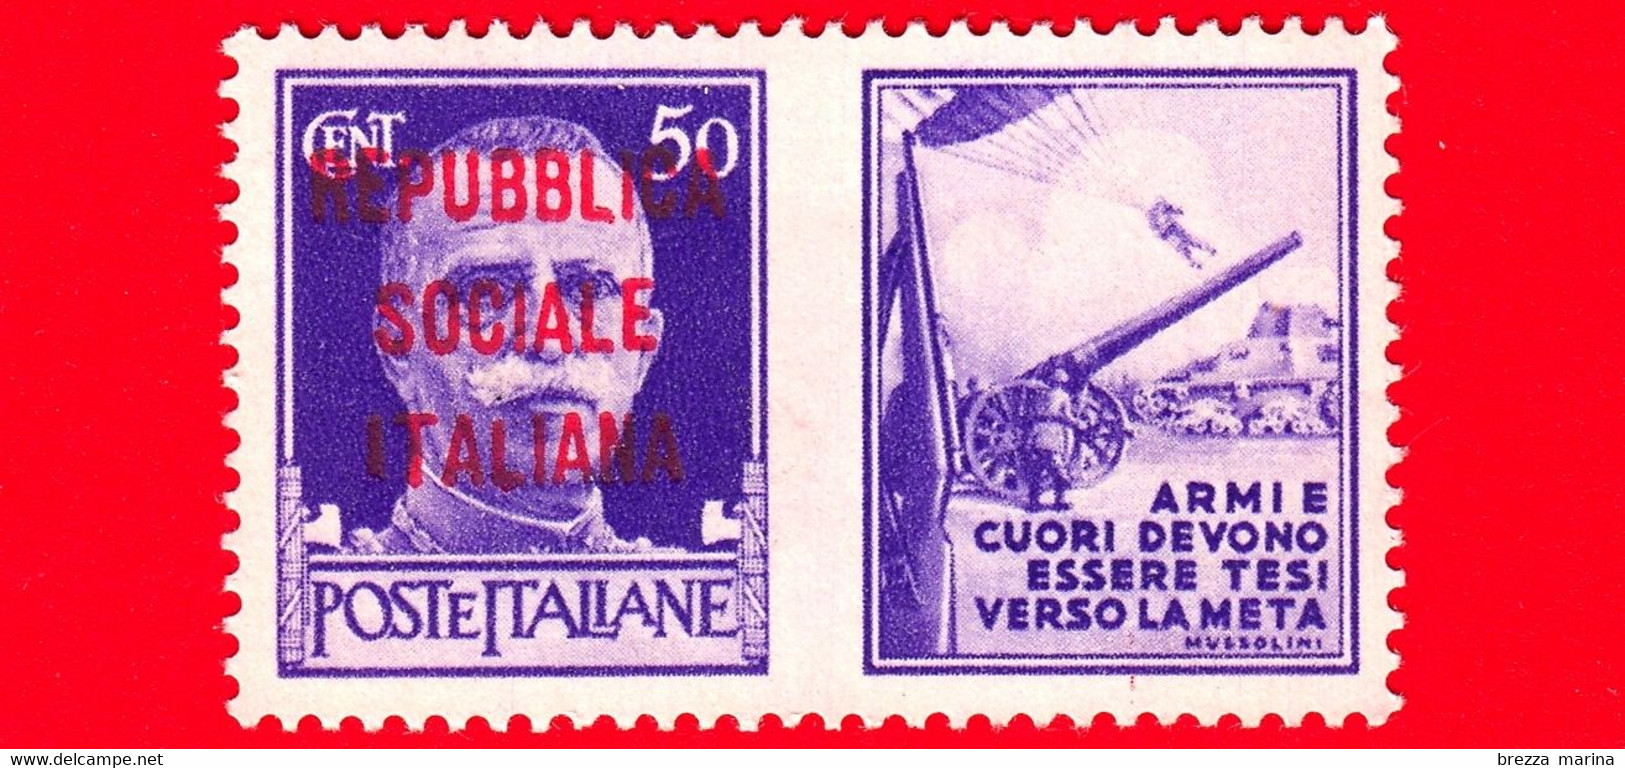 Nuovo - MNH - ITALIA - Rep. Sociale - 1944 - Imperiale - Propaganda Di Guerra - Armi E Cuori Devono Essere Tesi Ver - 50 - War Propaganda